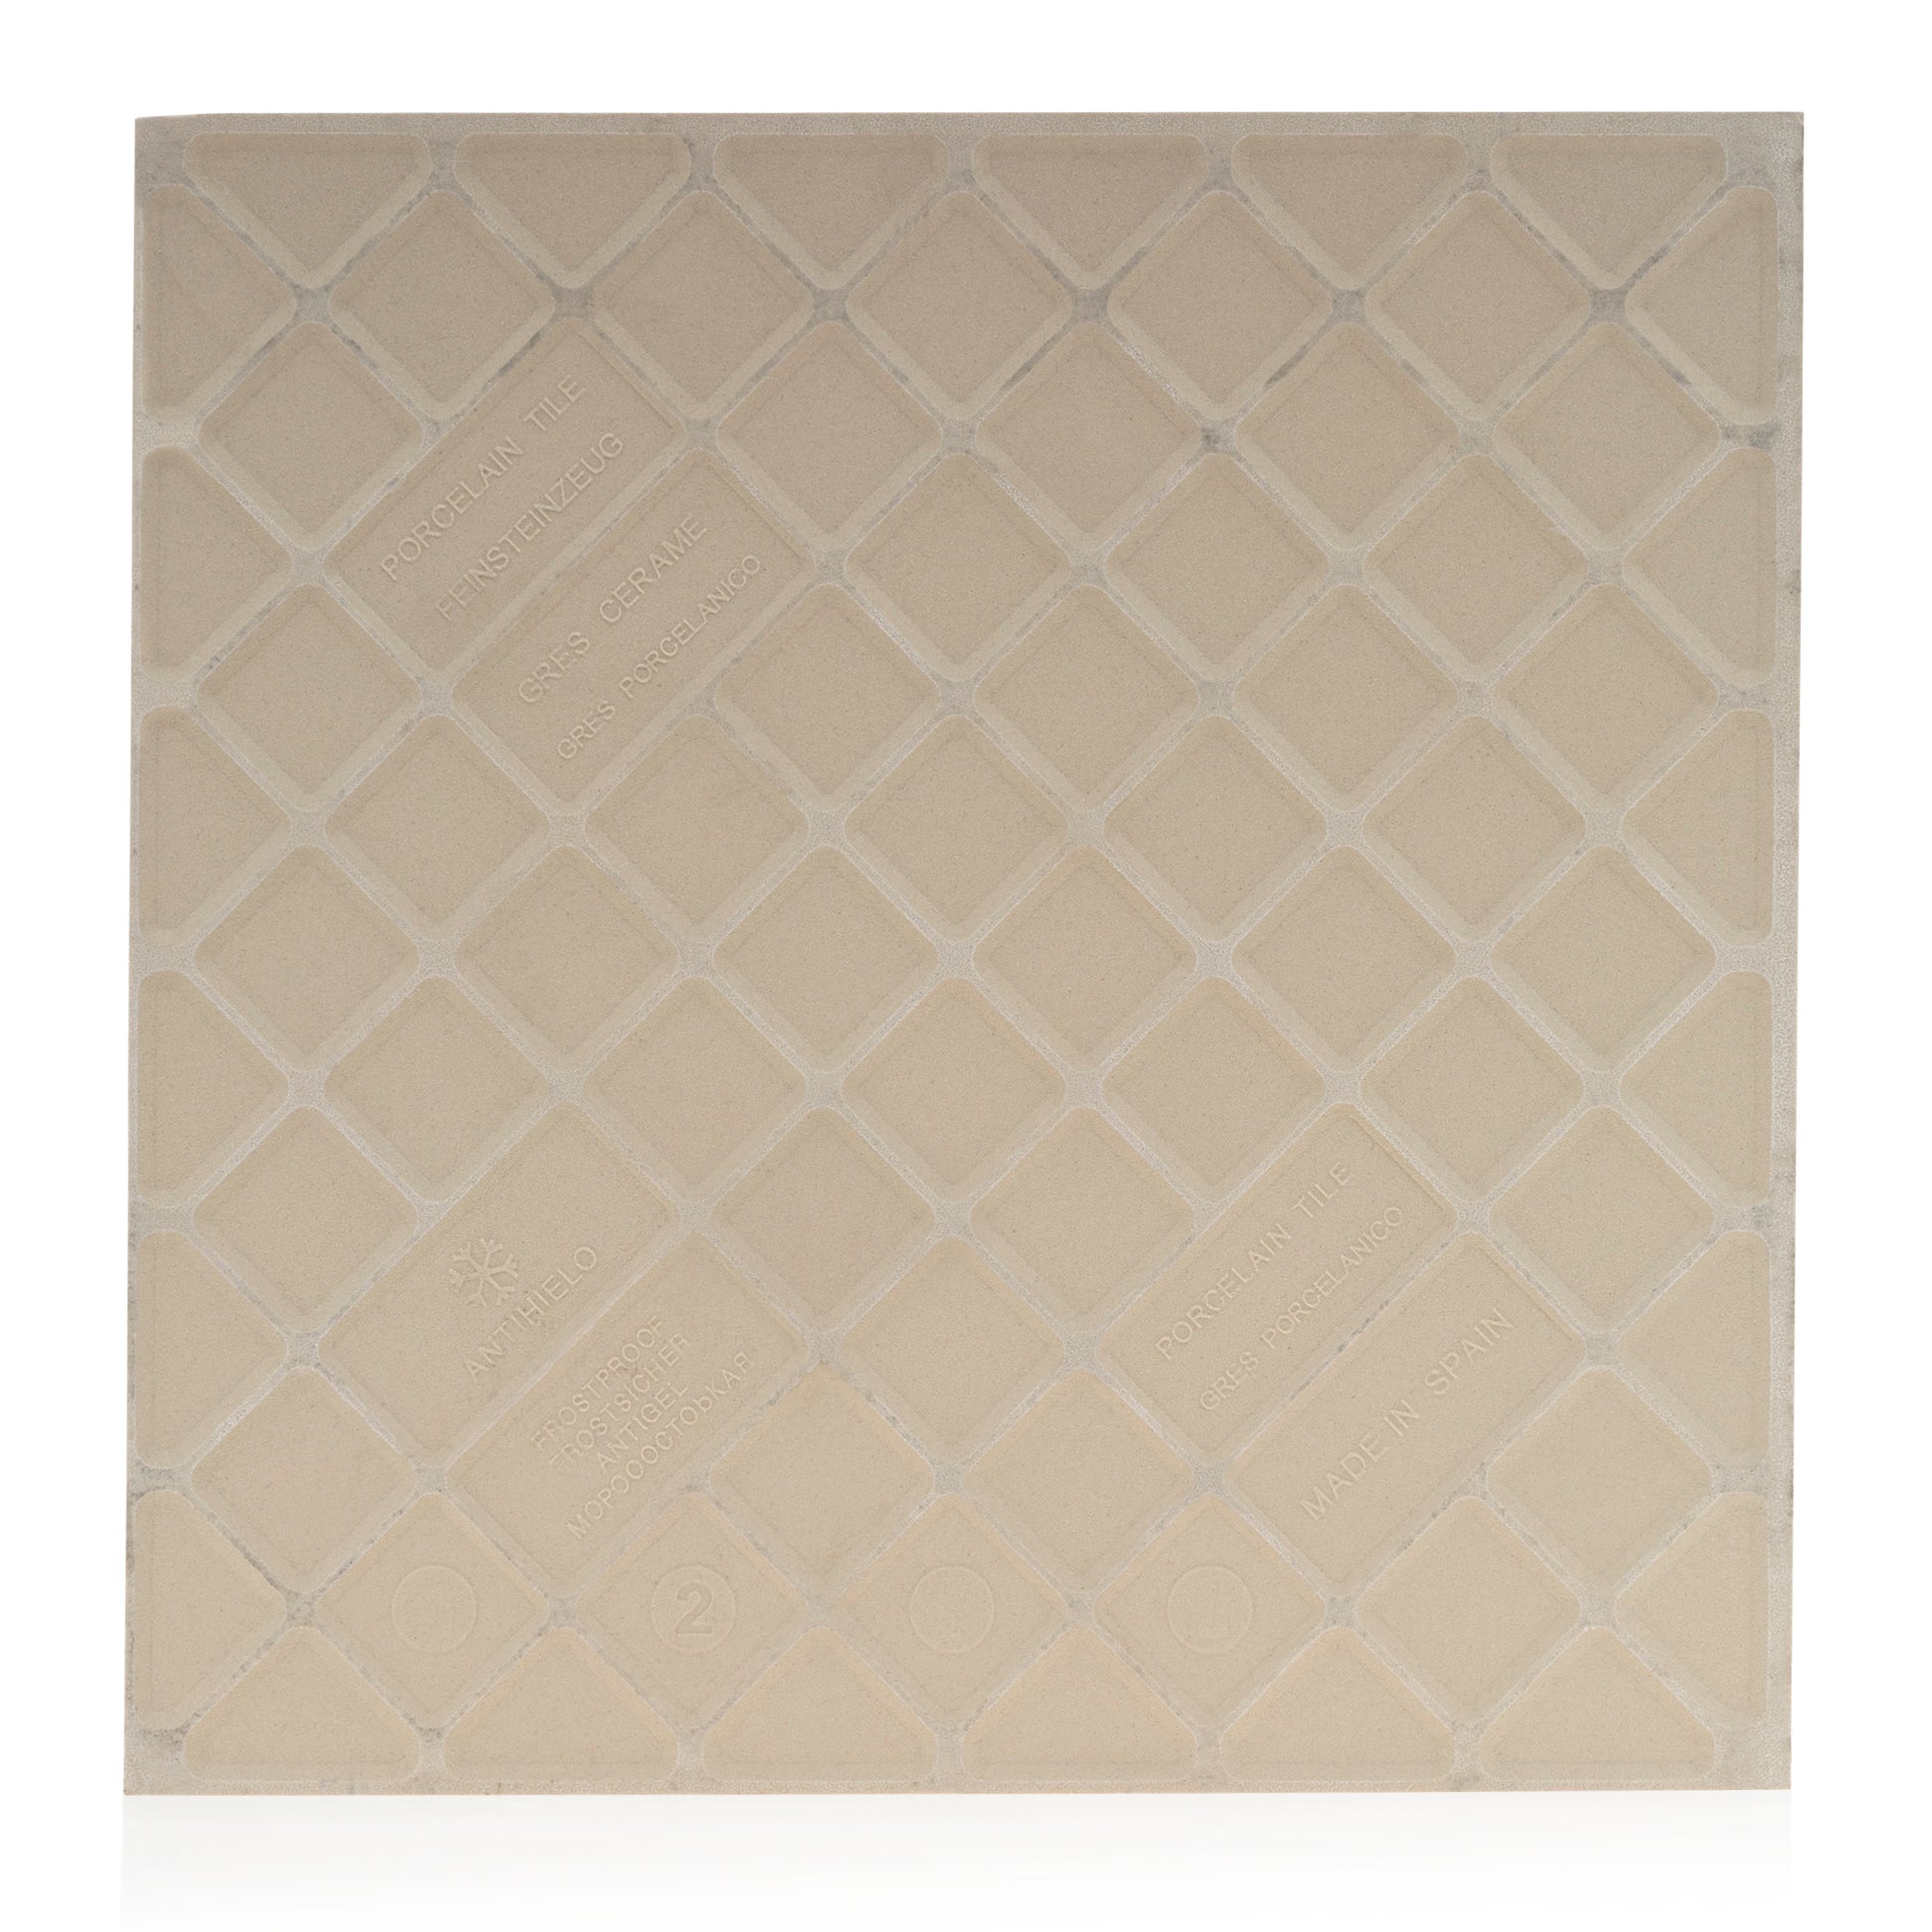 11.71x11.71  Cabana Topaz Porcelain tile - Industry Tile